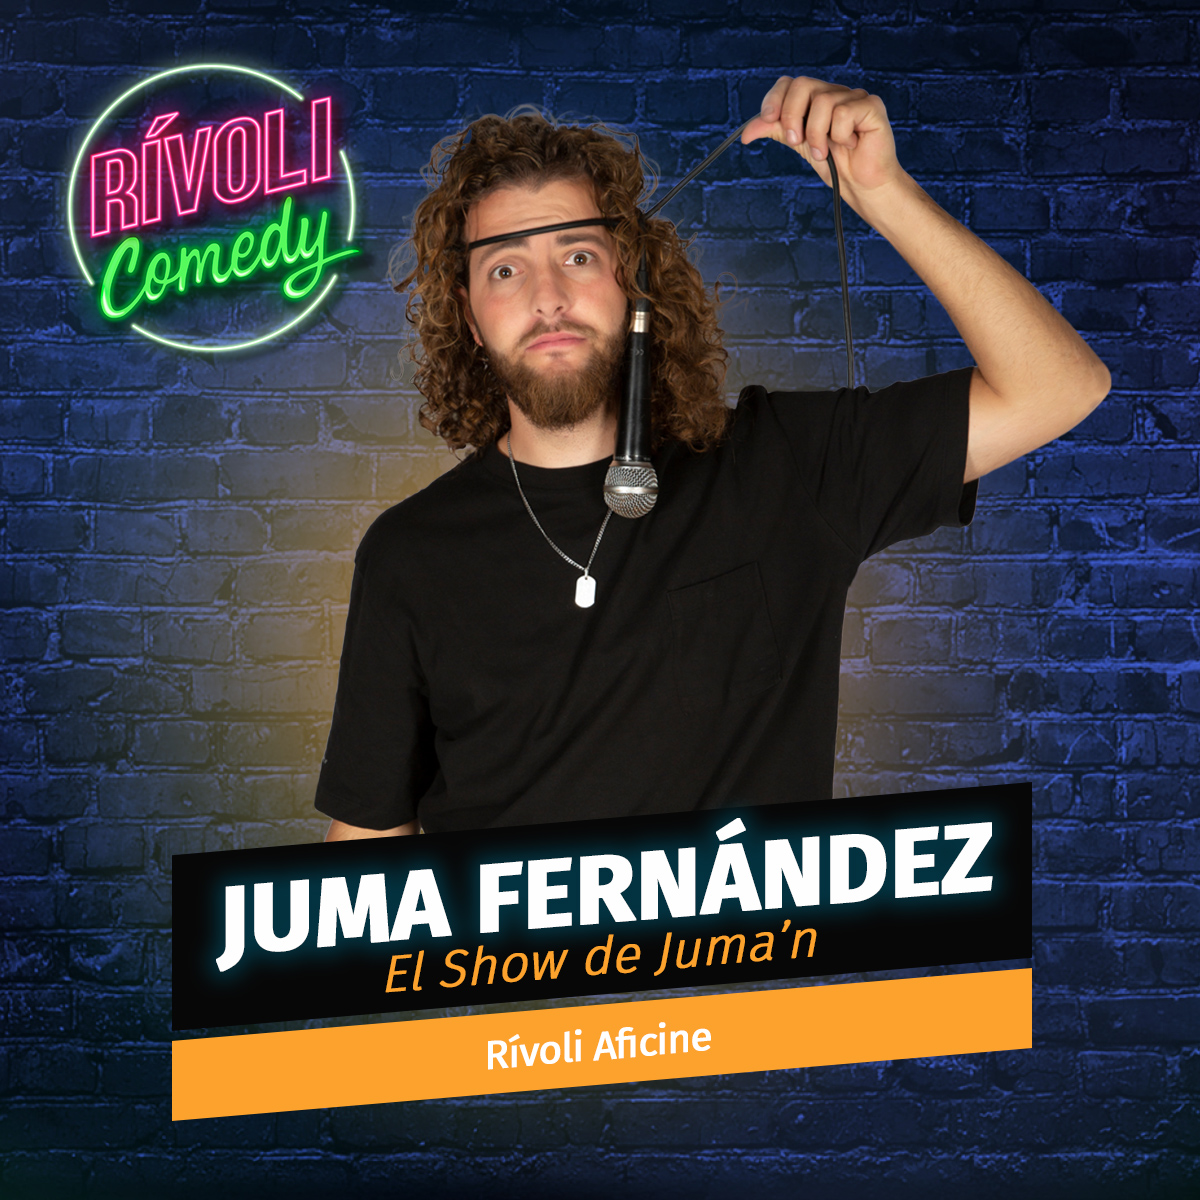 Juma Fernández | El show de Juma'n · 17 de febrero · Palma de Mallorca (Rívoli Comedy)